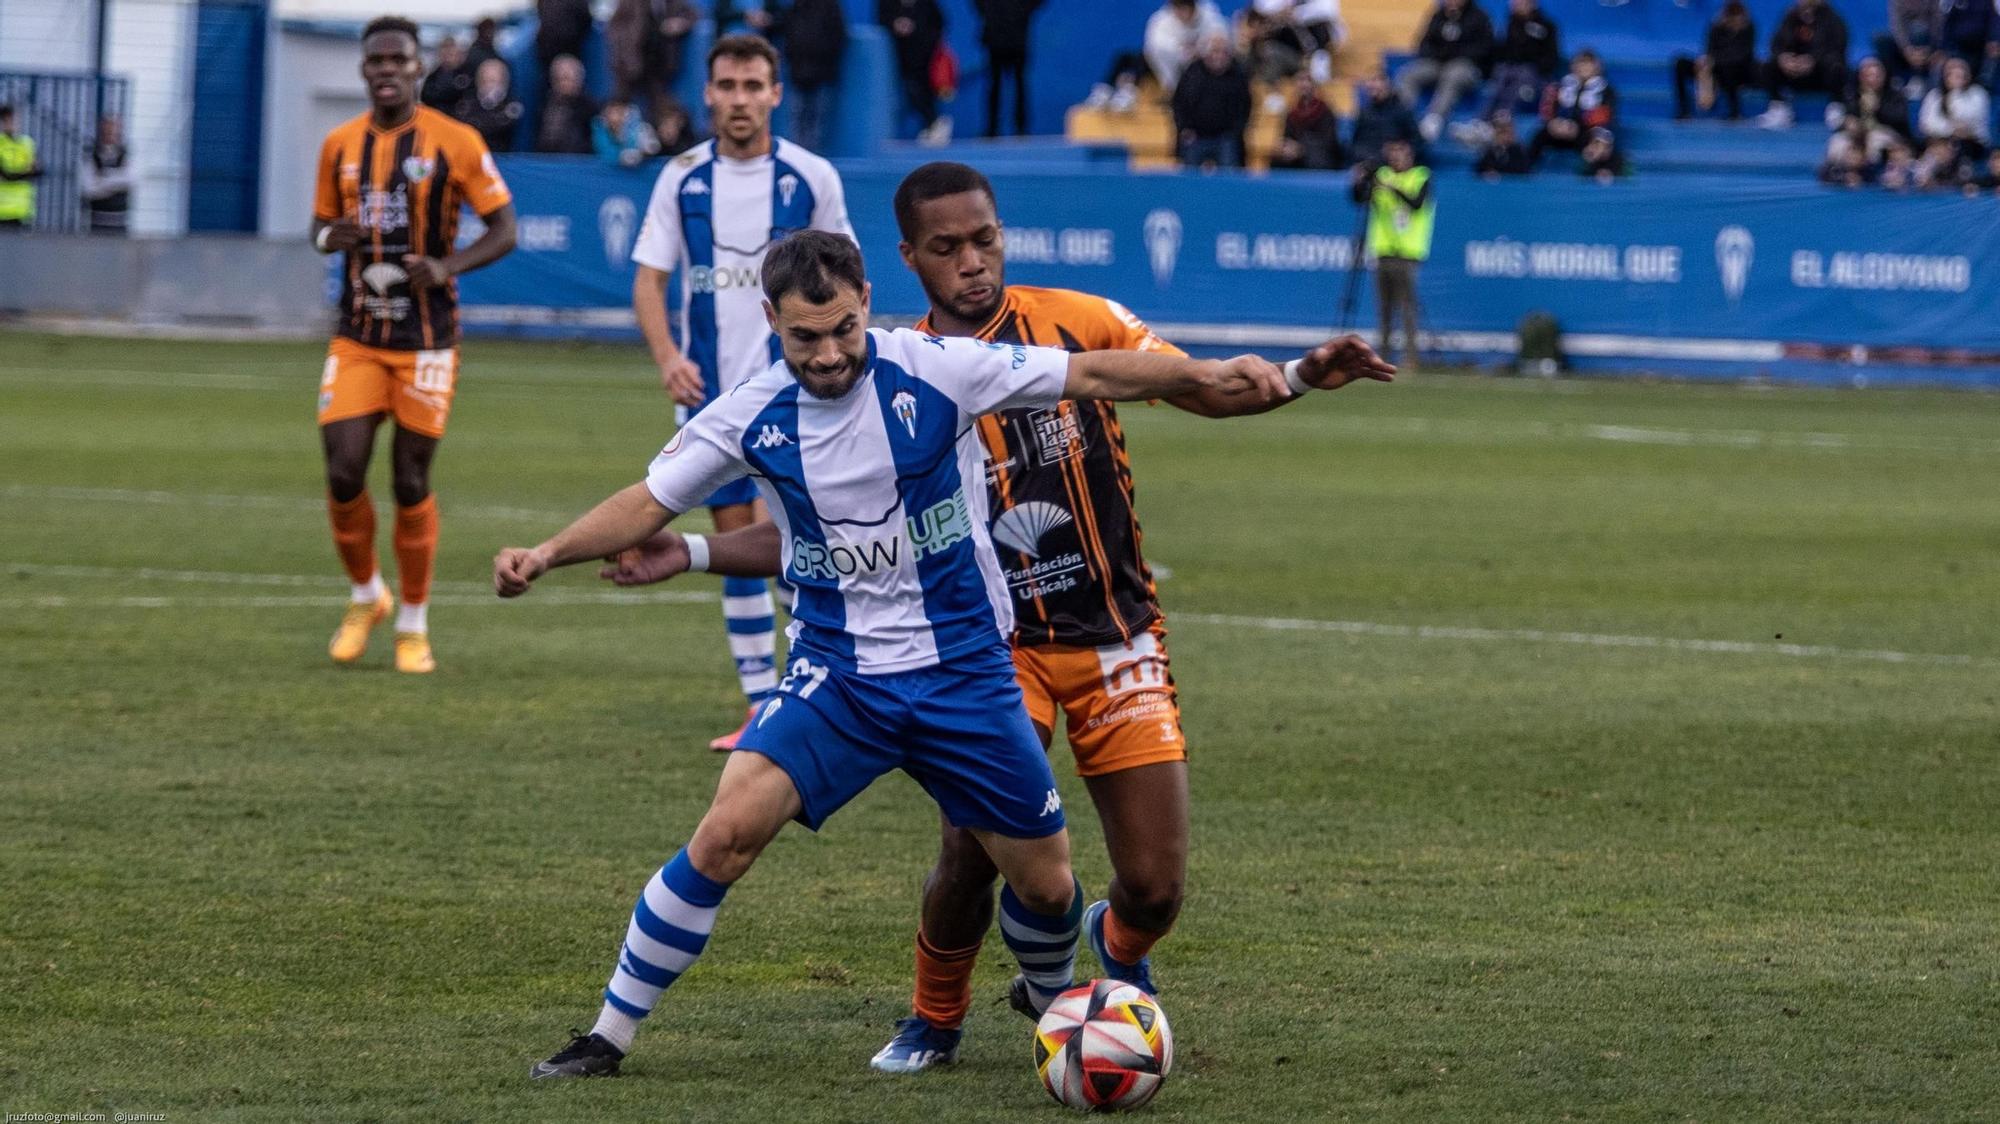 Alcaina da la victoria al Deportivo Alcoyano con un gol de penalti